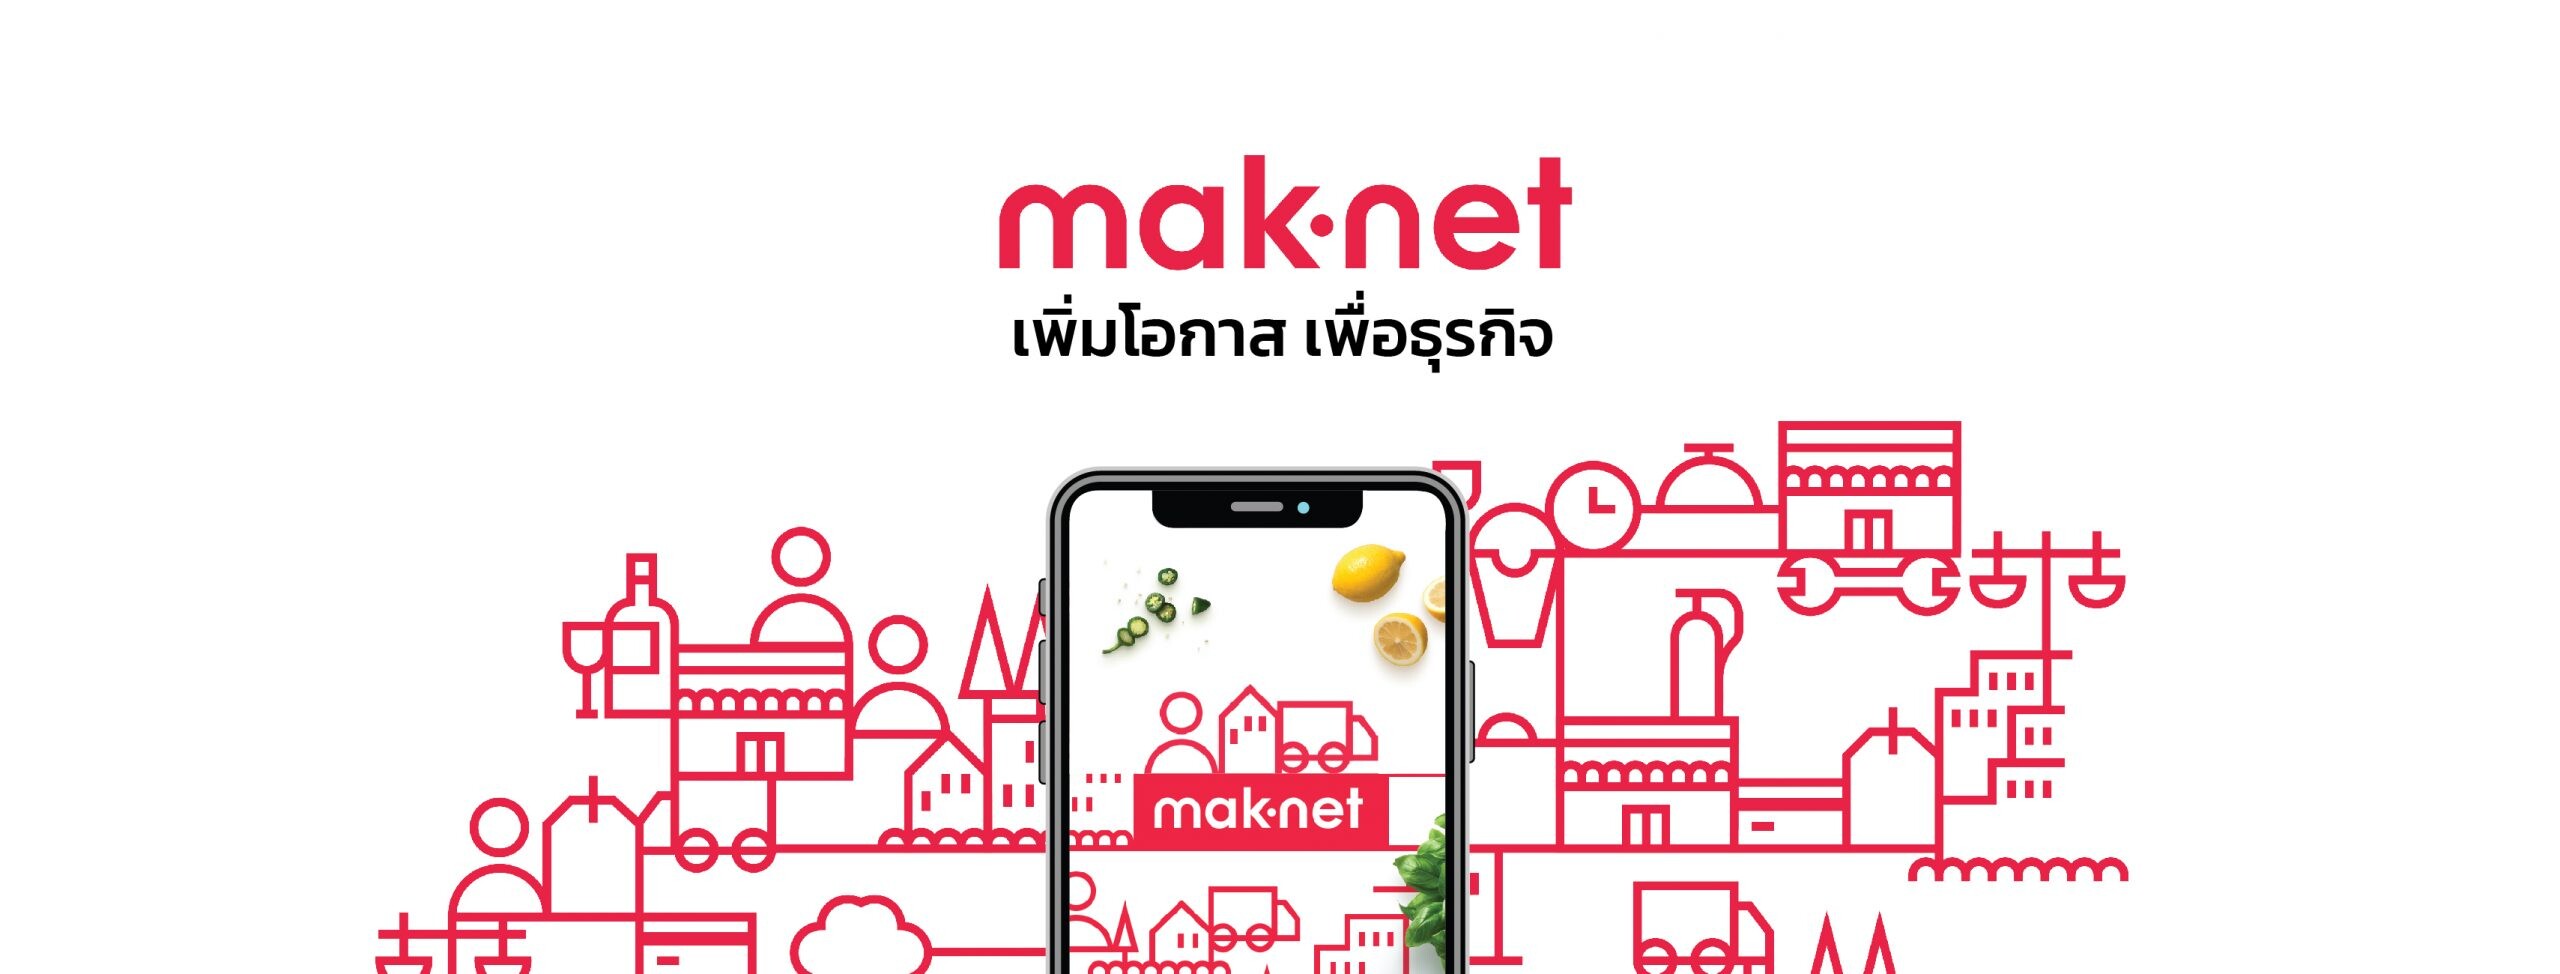 แม็คโคร วางกลยุทธ์ O2O เดินหน้าขับเคลื่อนธุรกิจรับยุคดิจิทัล เตรียมเปิดตลาดค้าส่งออนไลน์ 'maknet'  ปั้นแพลตฟอร์ม B2B Marketplace อันดับหนึ่งของไทย